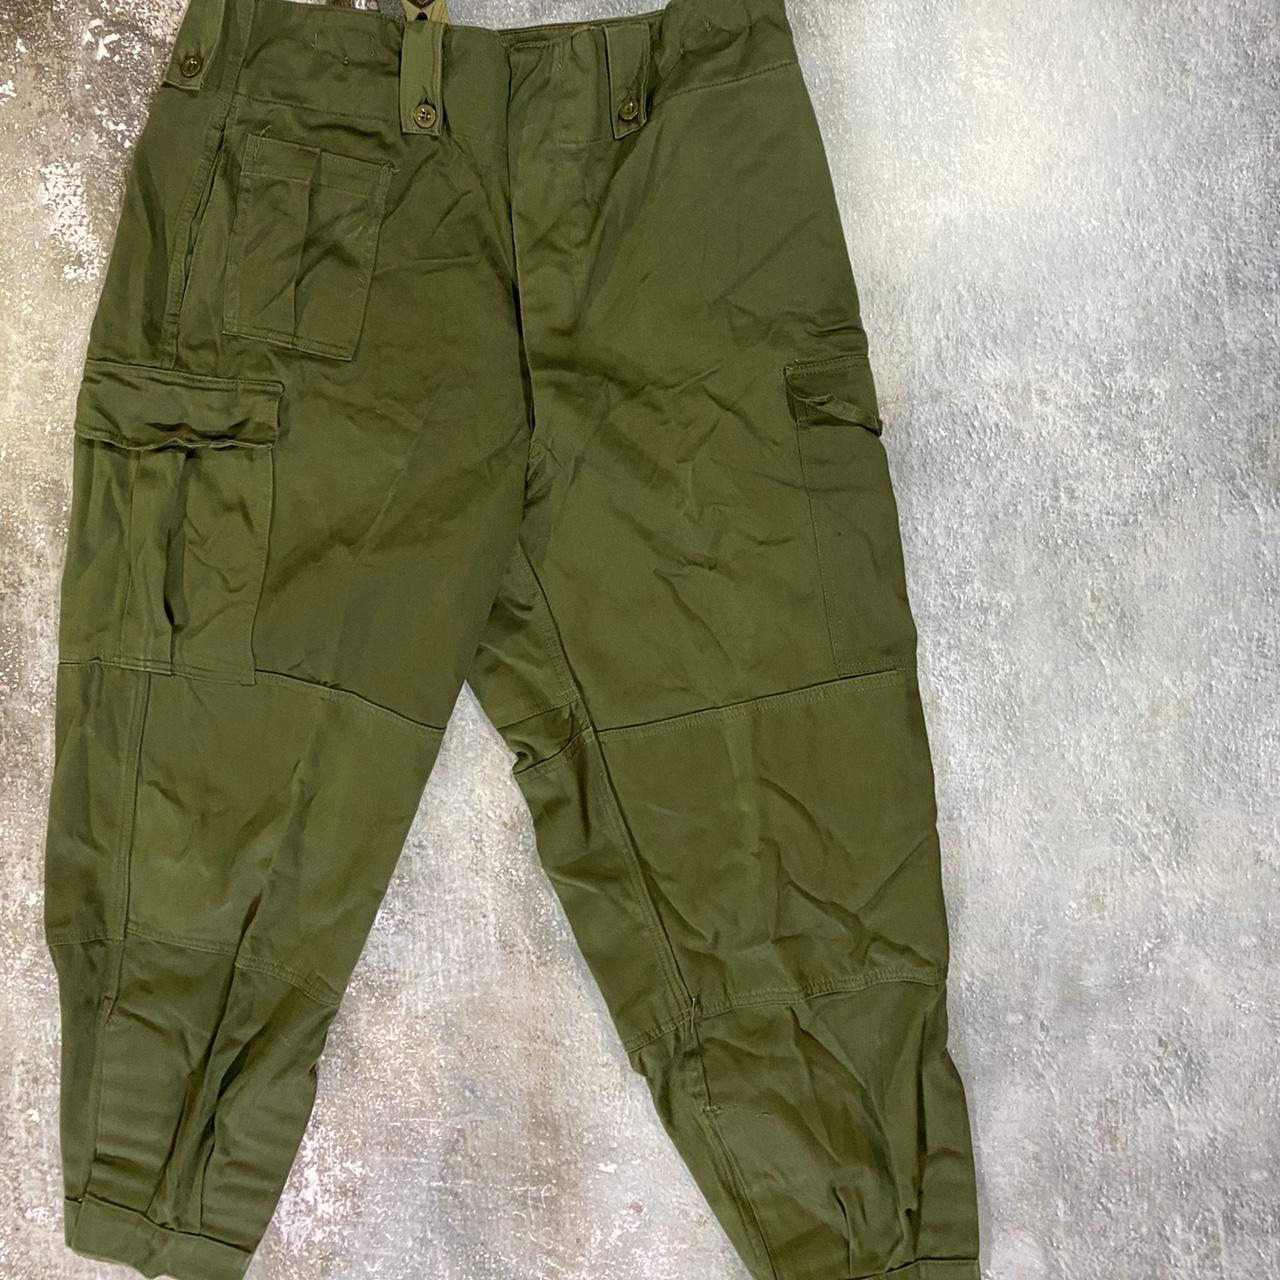 Vintage 70s Military Parachute pants! These pants... - Depop